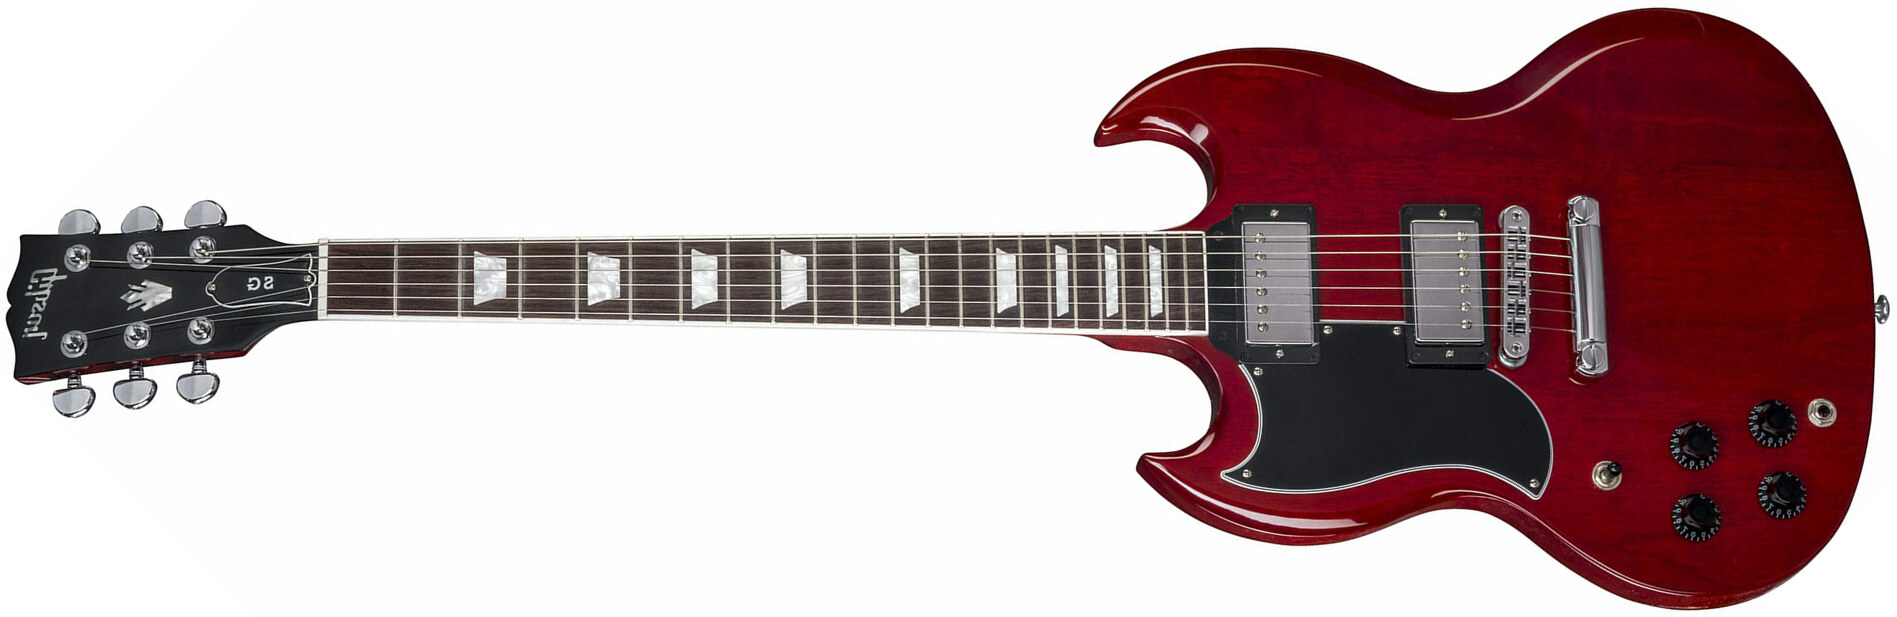 Gibson Sg Standard 2018 Lh Gaucher - Heritage Cherry - Guitarra electrica para zurdos - Main picture